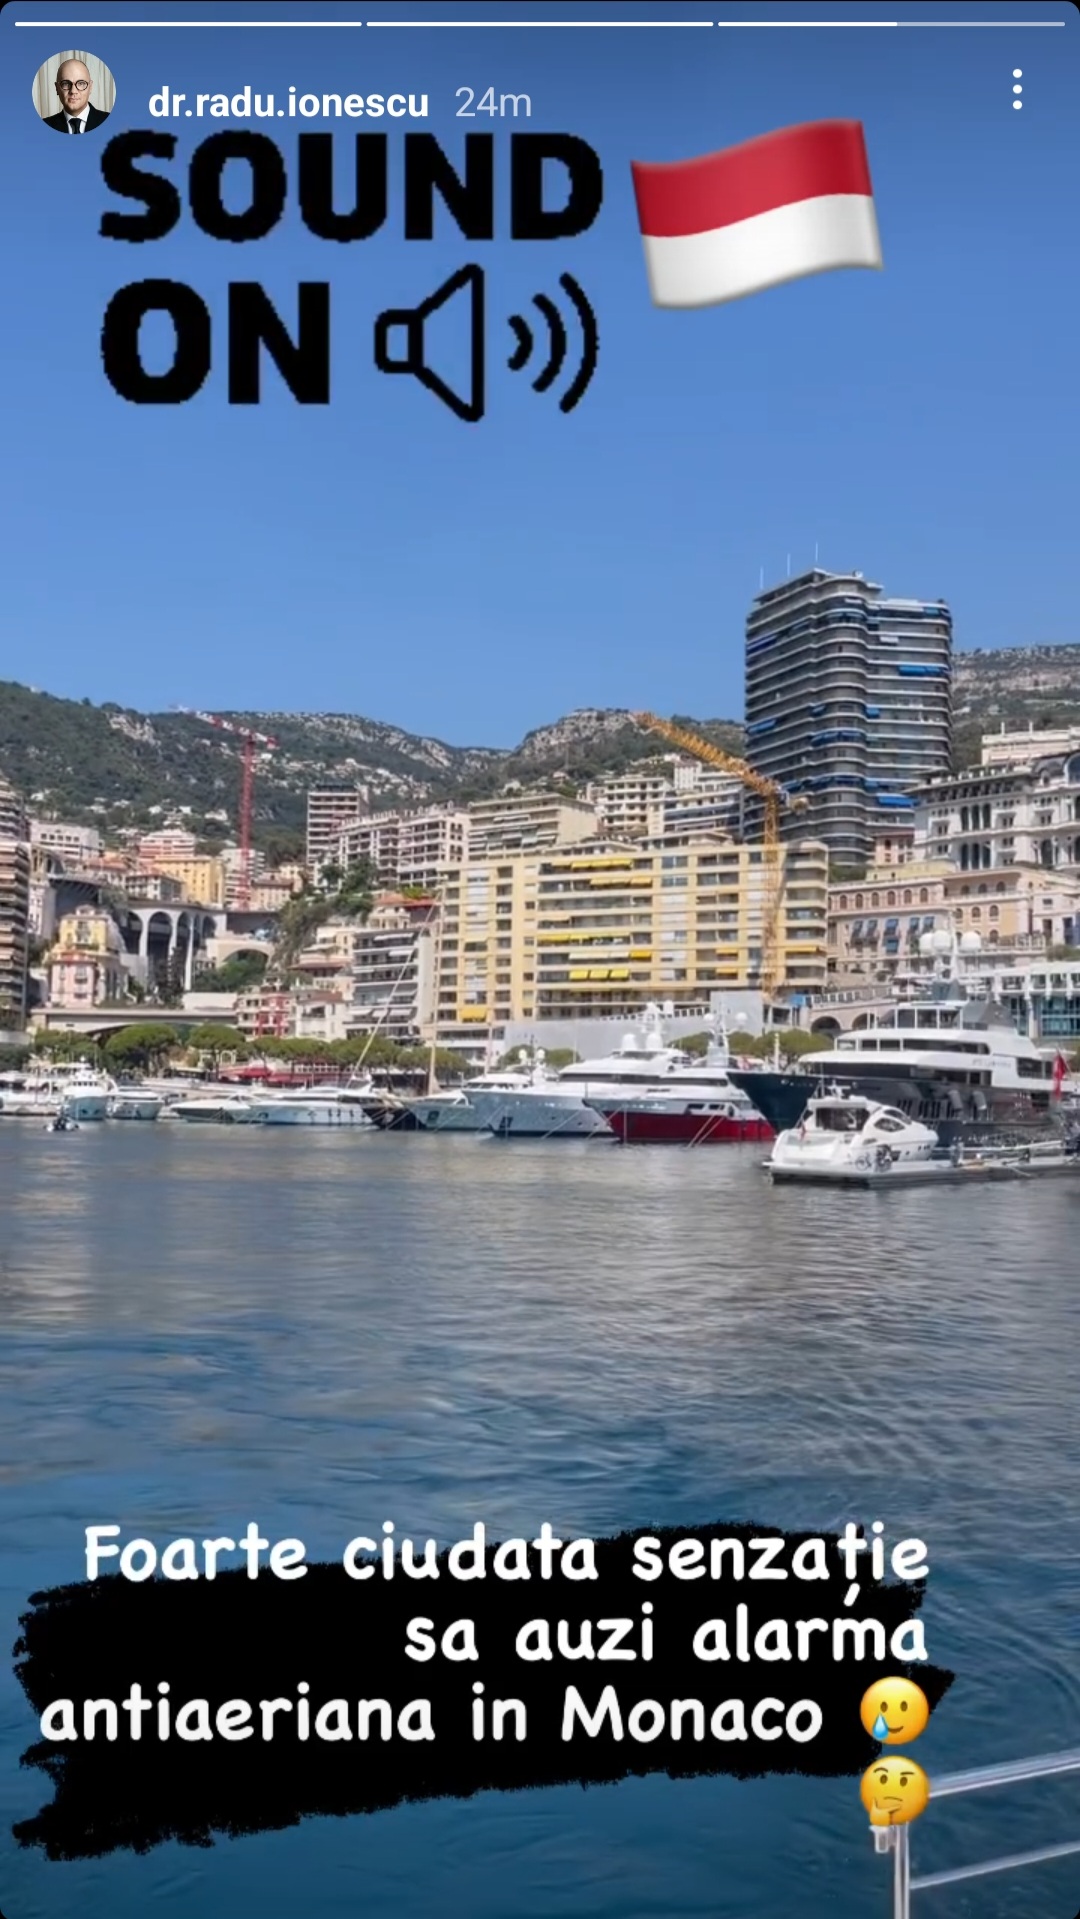 Alertă în Monaco! Se aud alarme antiaeriene peste tot